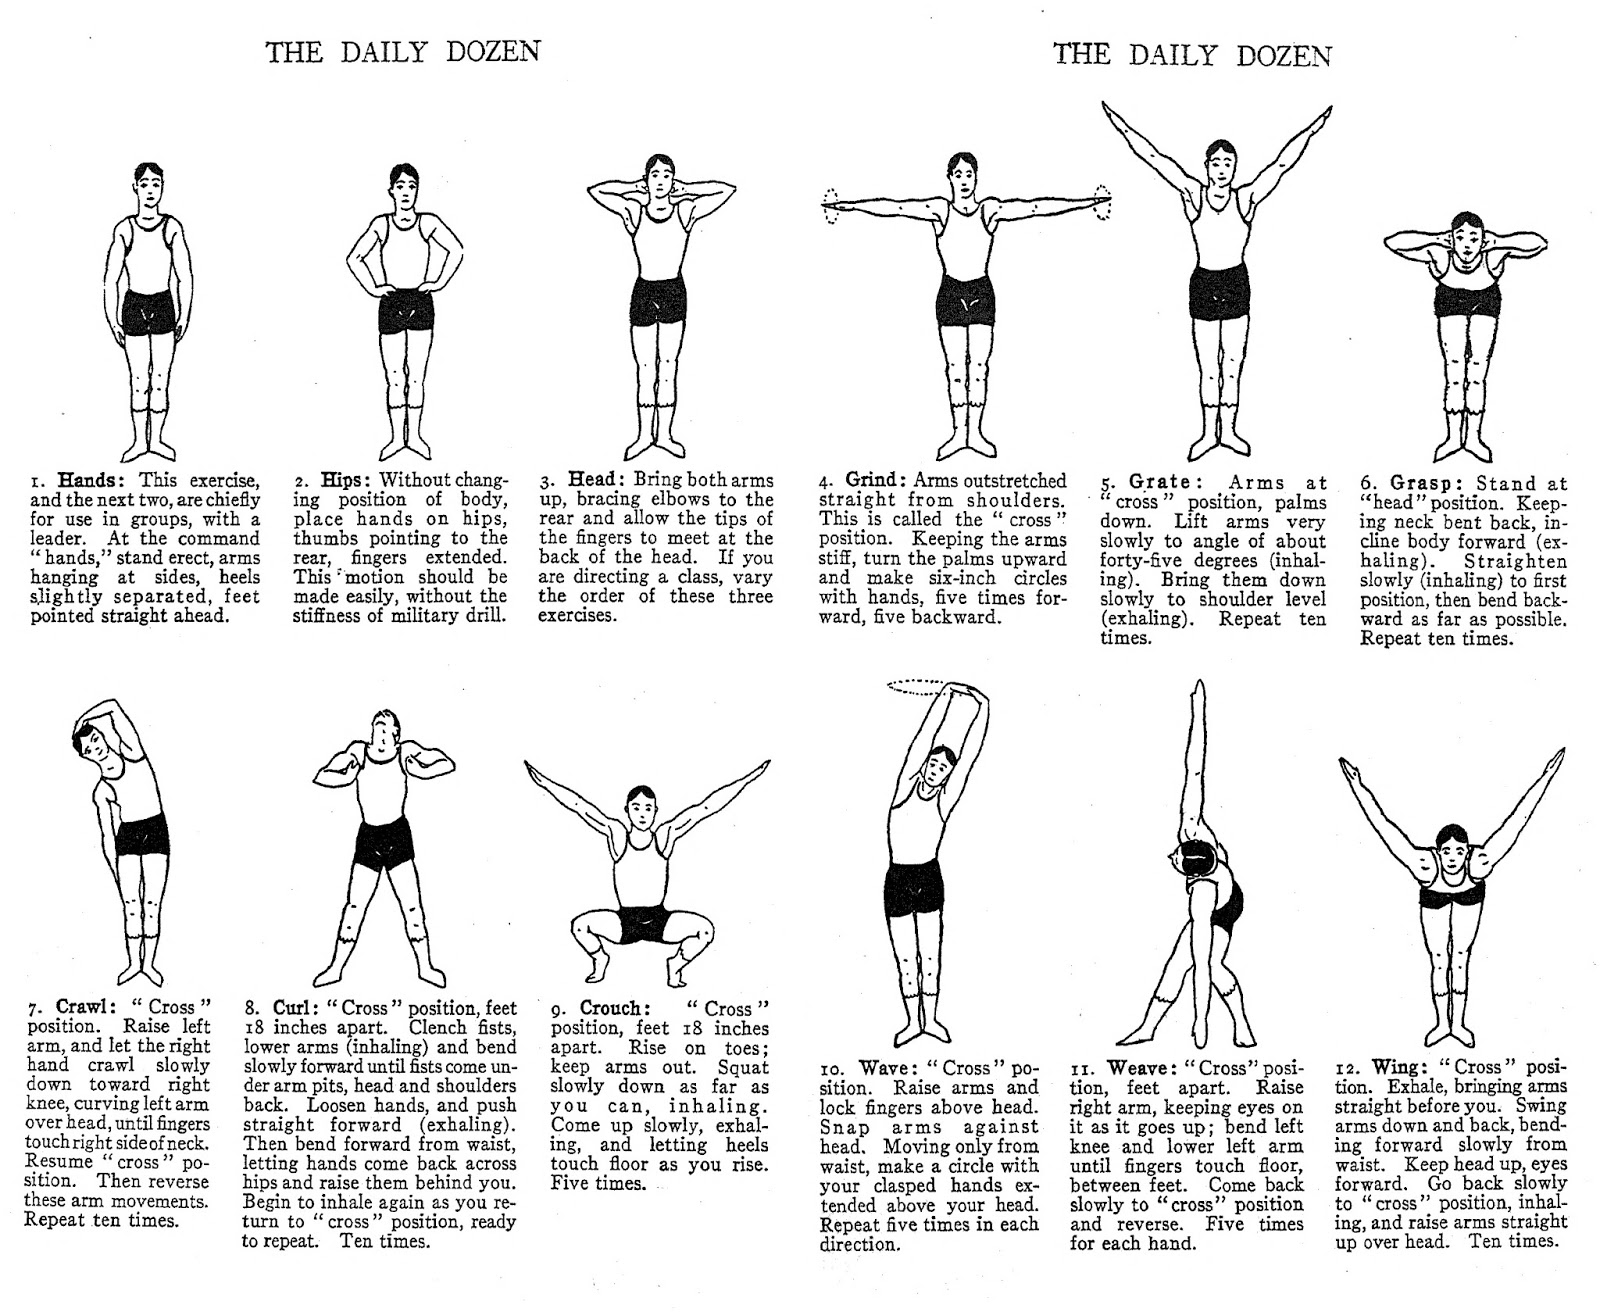 daily dozen exercises poster